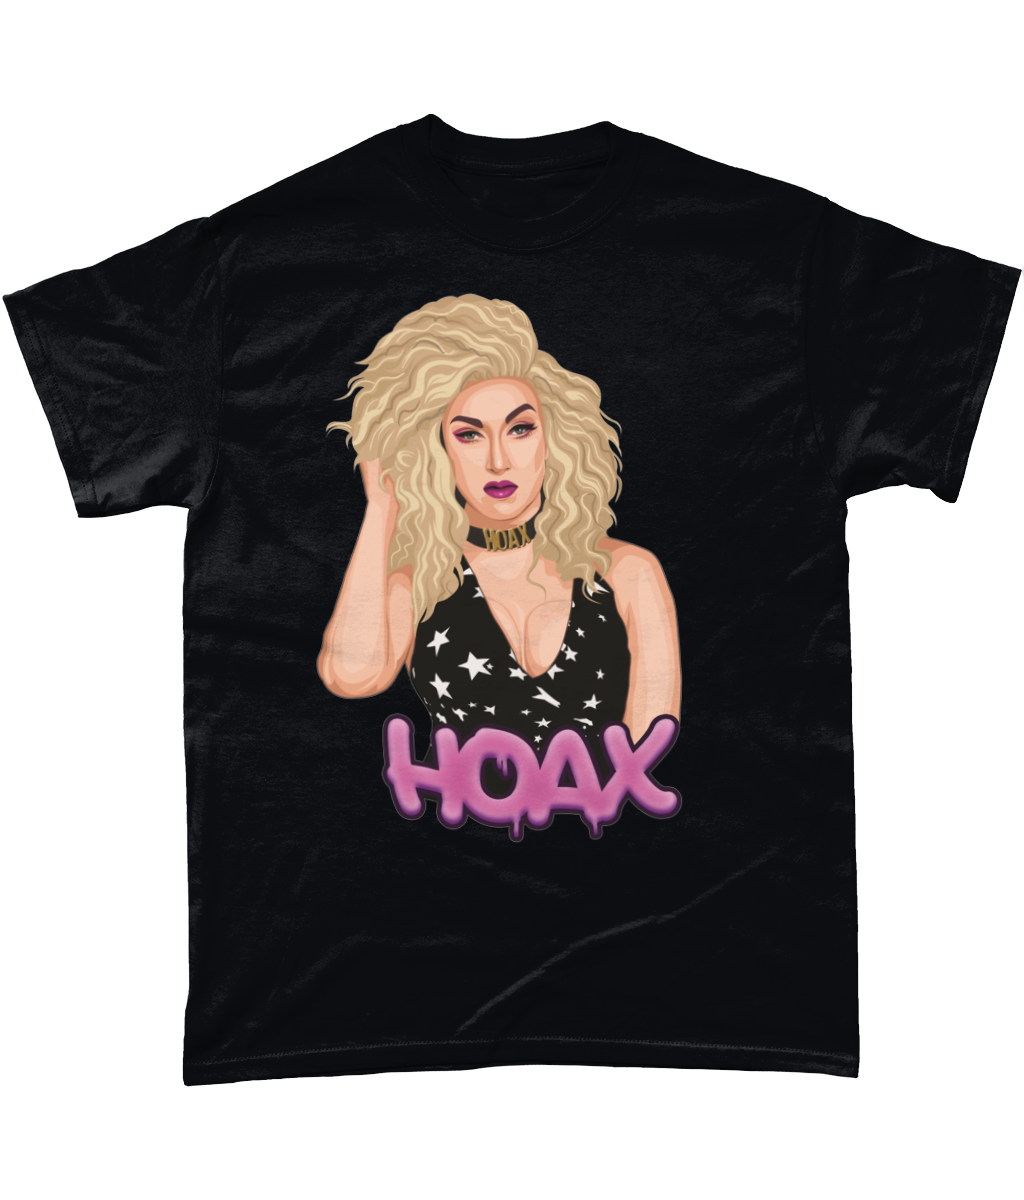 HOAX - T-Shirt